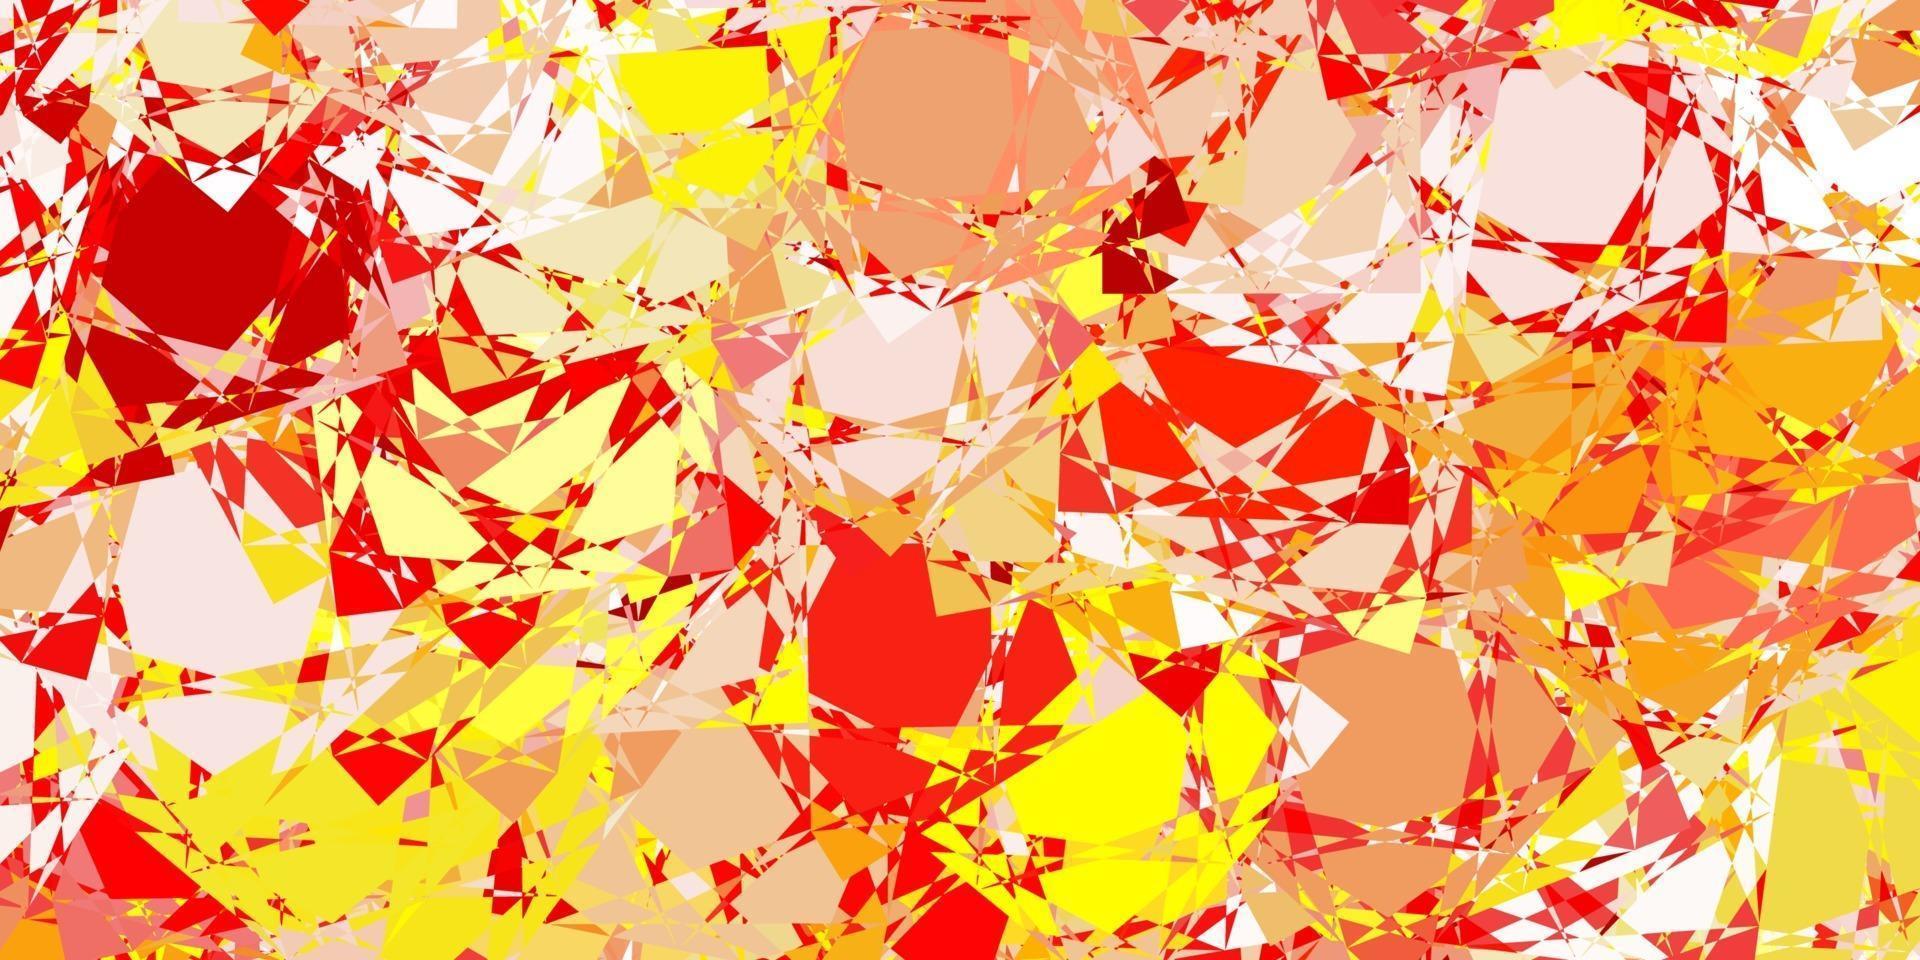 ljusröd, gul vektorbakgrund med polygonala former. vektor